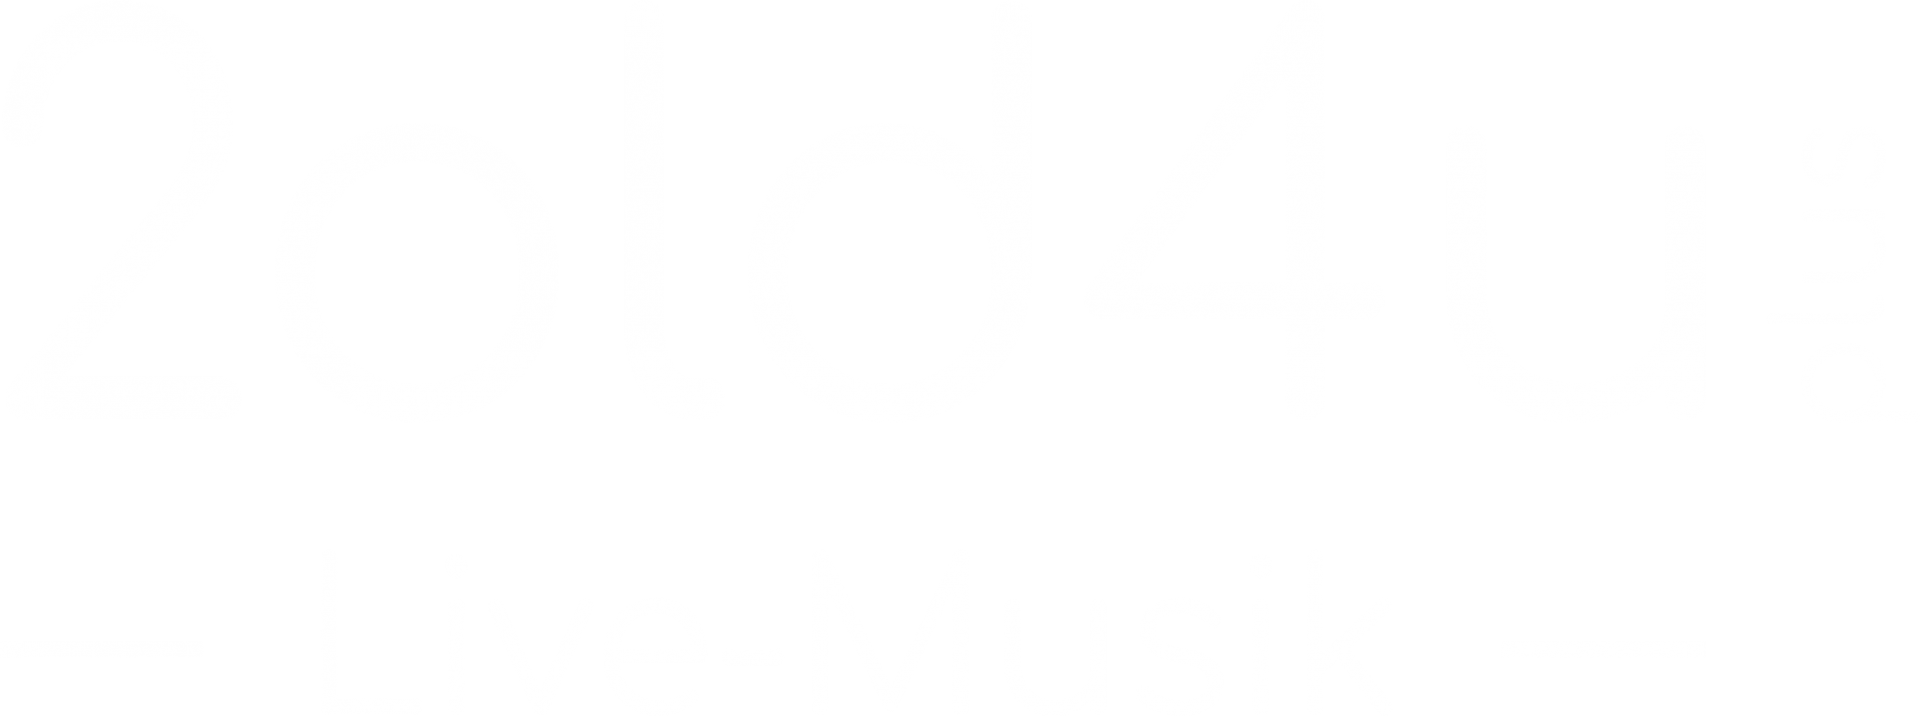 Logo 2old4u+ (weiß)